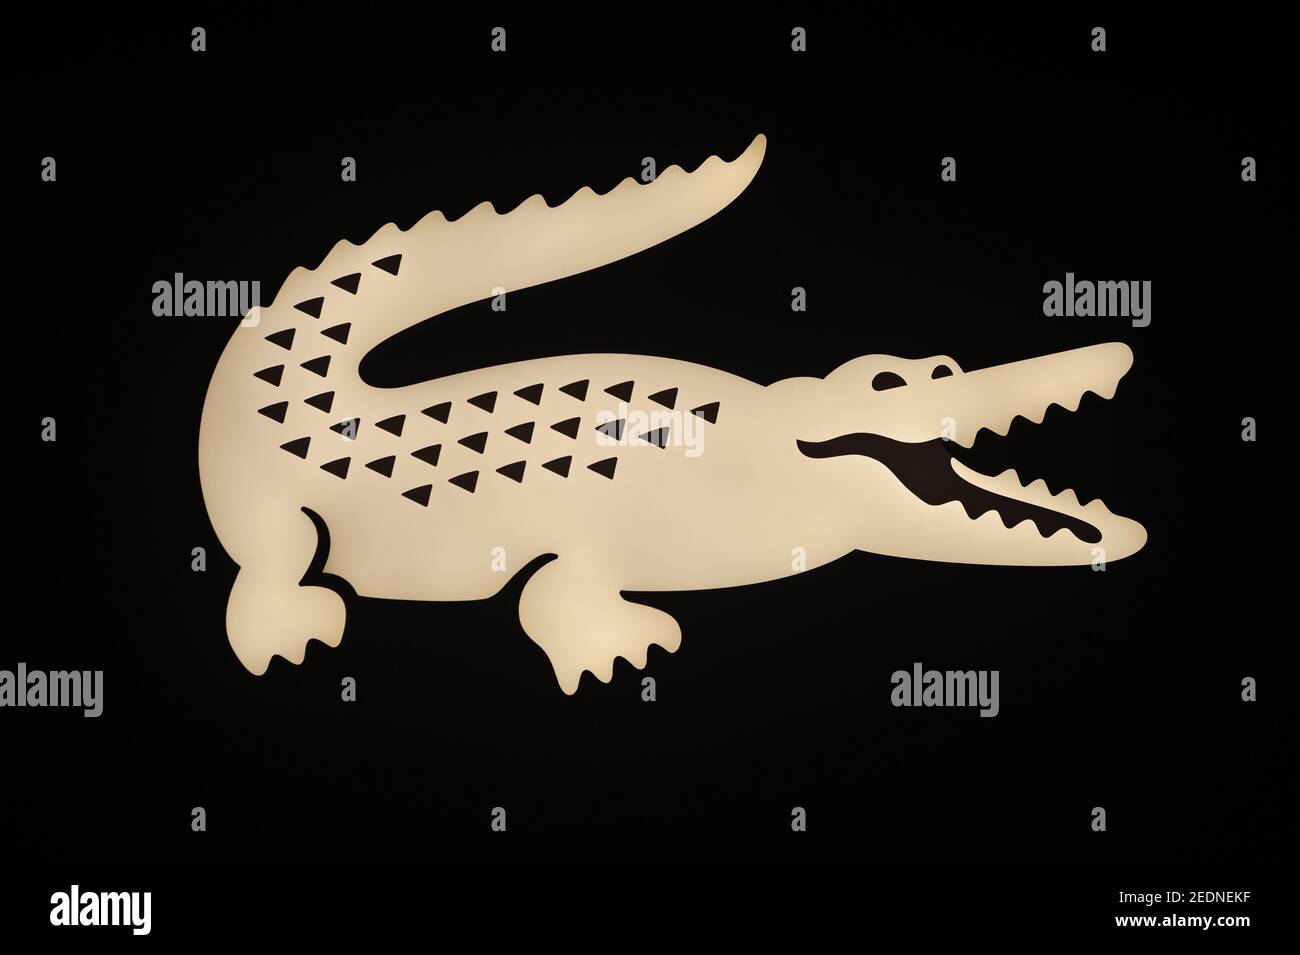 21.01.2021, Singapour, , Singapour - logo d'entreprise illuminé de la marque  emblématique et du label de mode Lacoste avec le célèbre crocodile dans un  magasin dans le n Photo Stock - Alamy